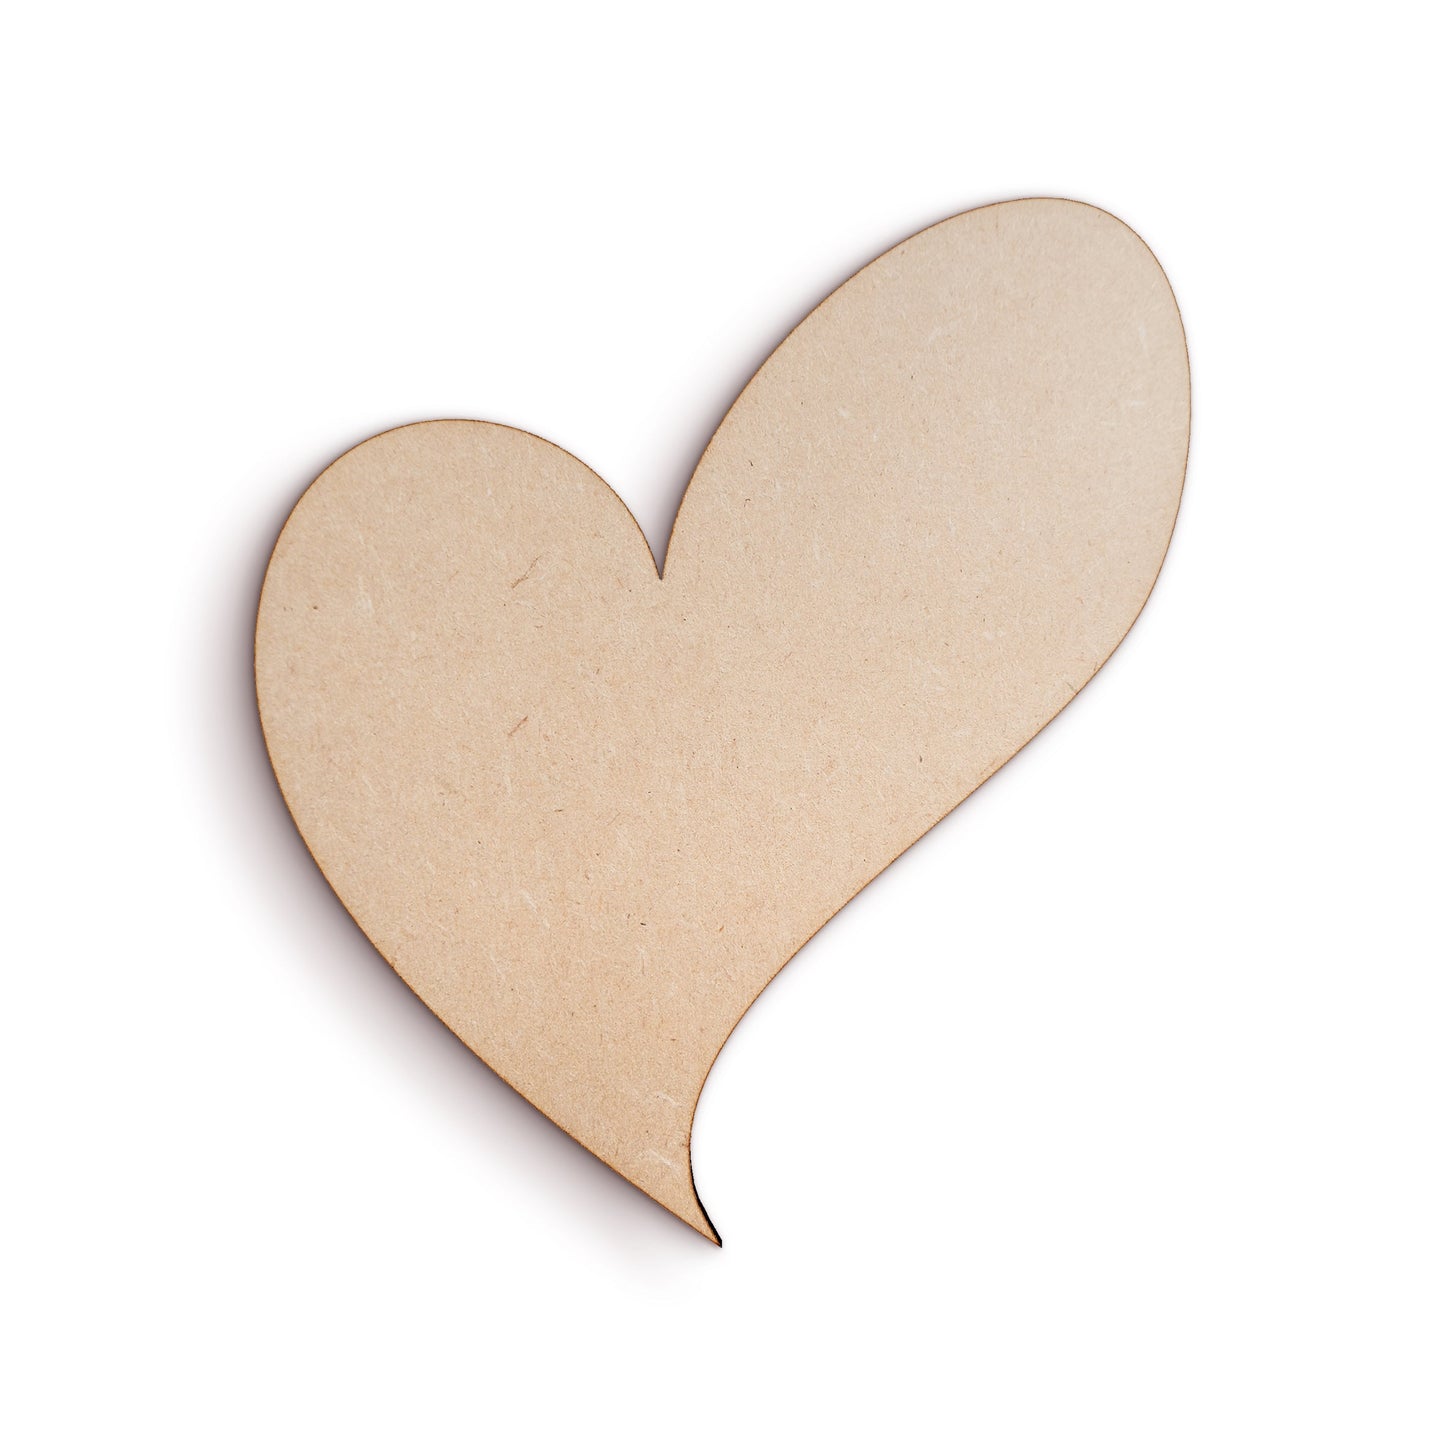 Heart wood craft shape SKU545164